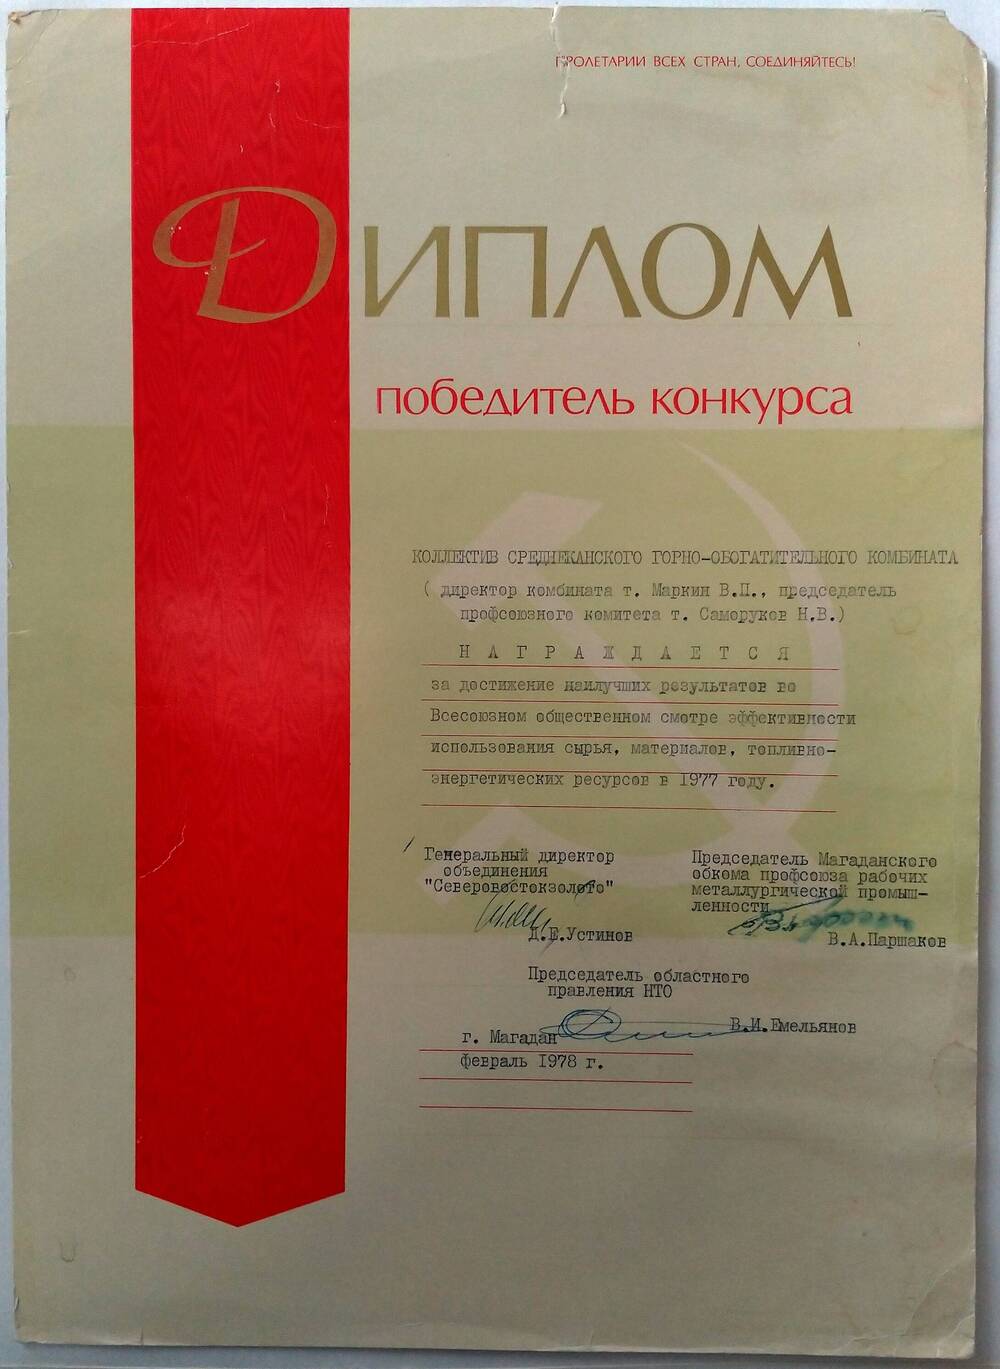 Диплом о награждении коллектива Среднеканского горно-обогатительного комбината